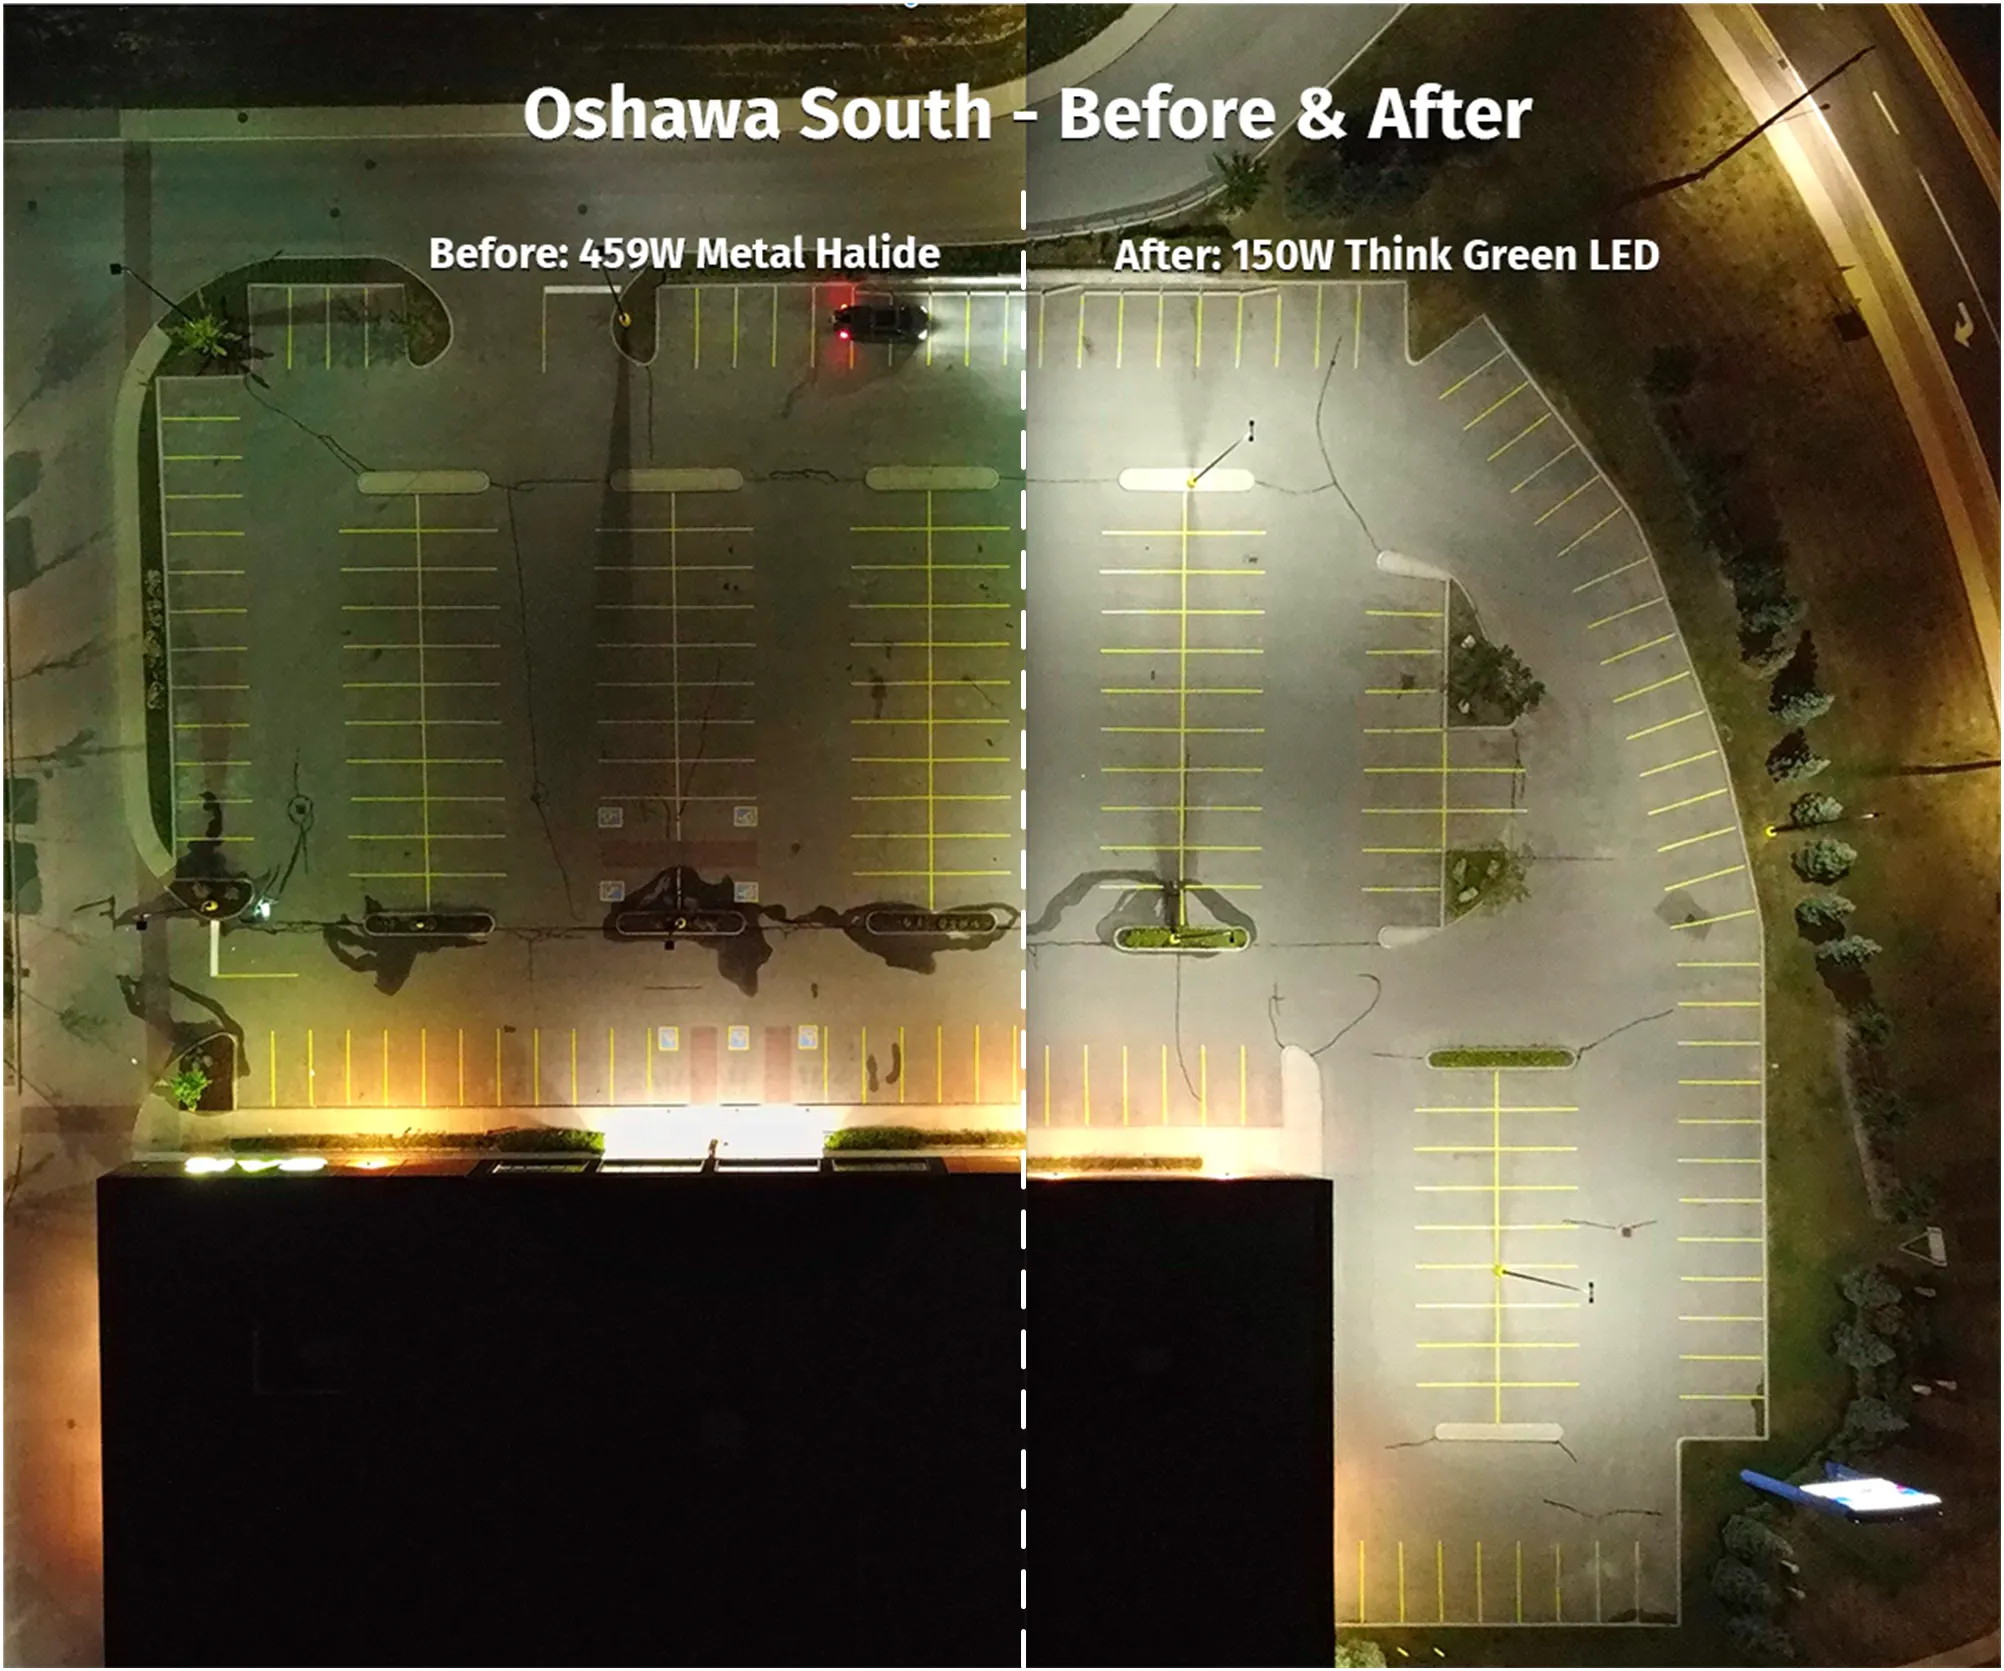 Oshawa South - Before & After